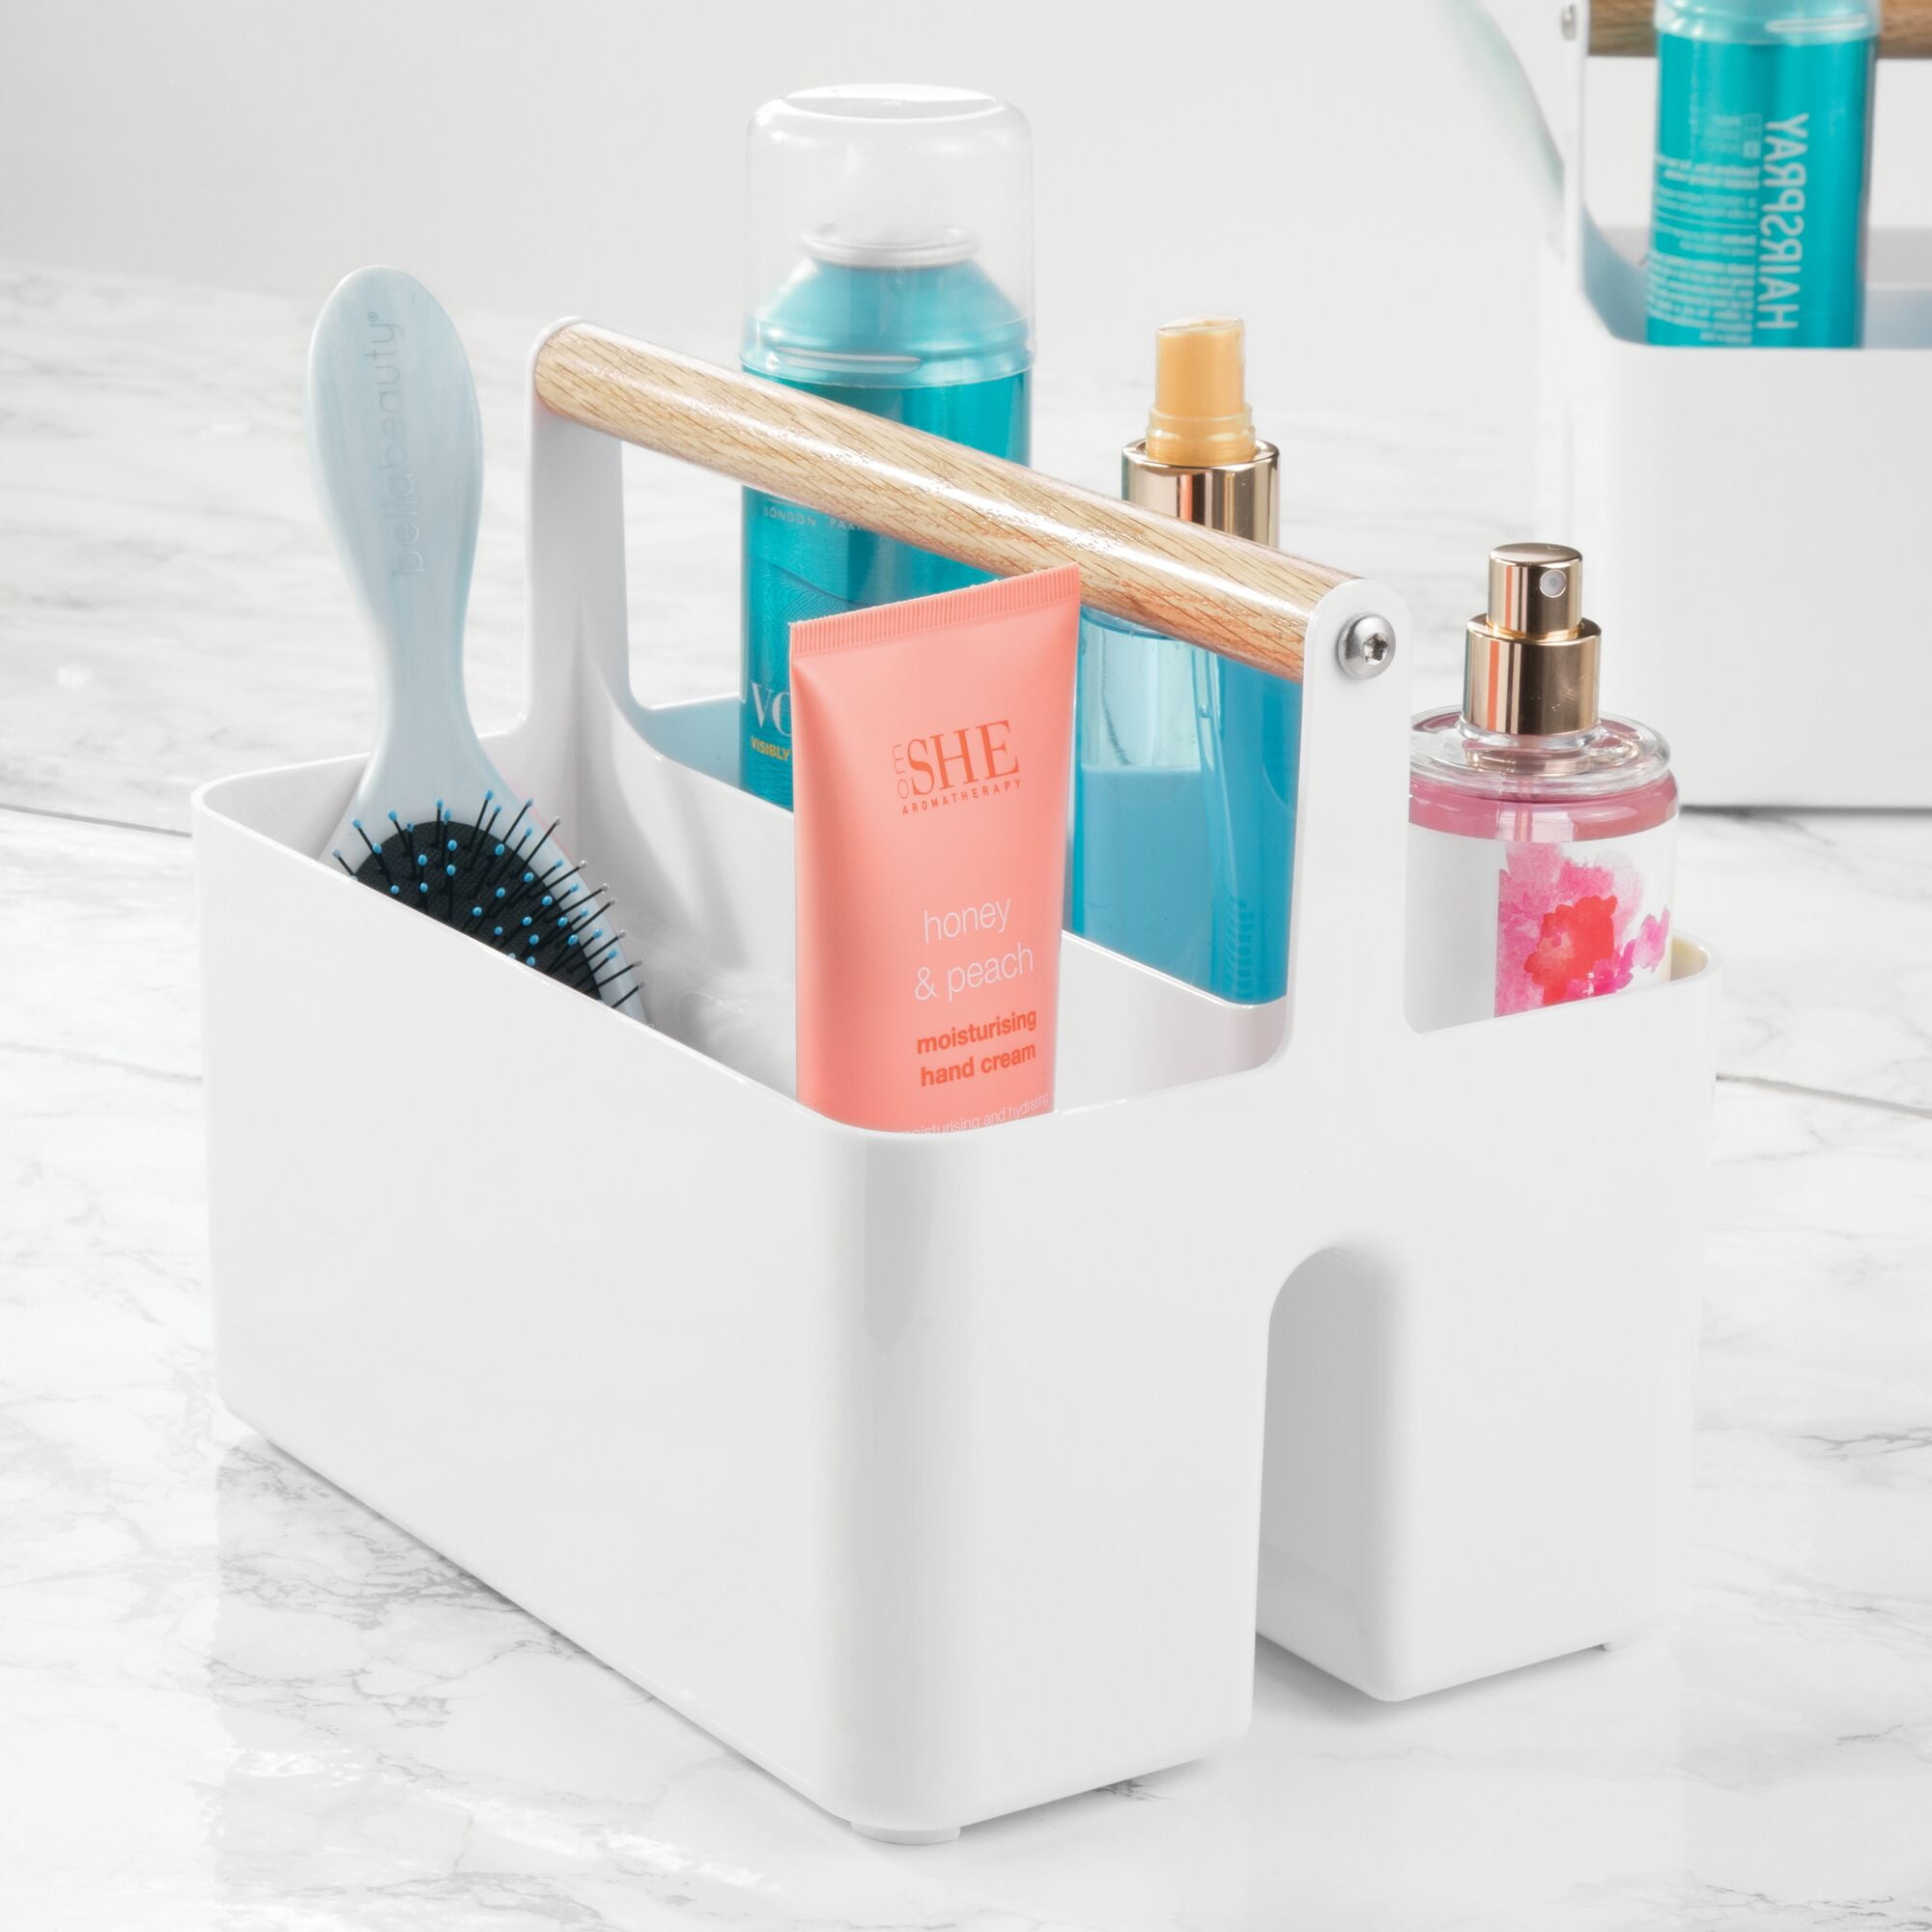 mDesign Small Plastic Shower/Bath Storage Organizer Caddy Tote with Handle  for Dorm, Shelf, Cabinet - Bath Caddies